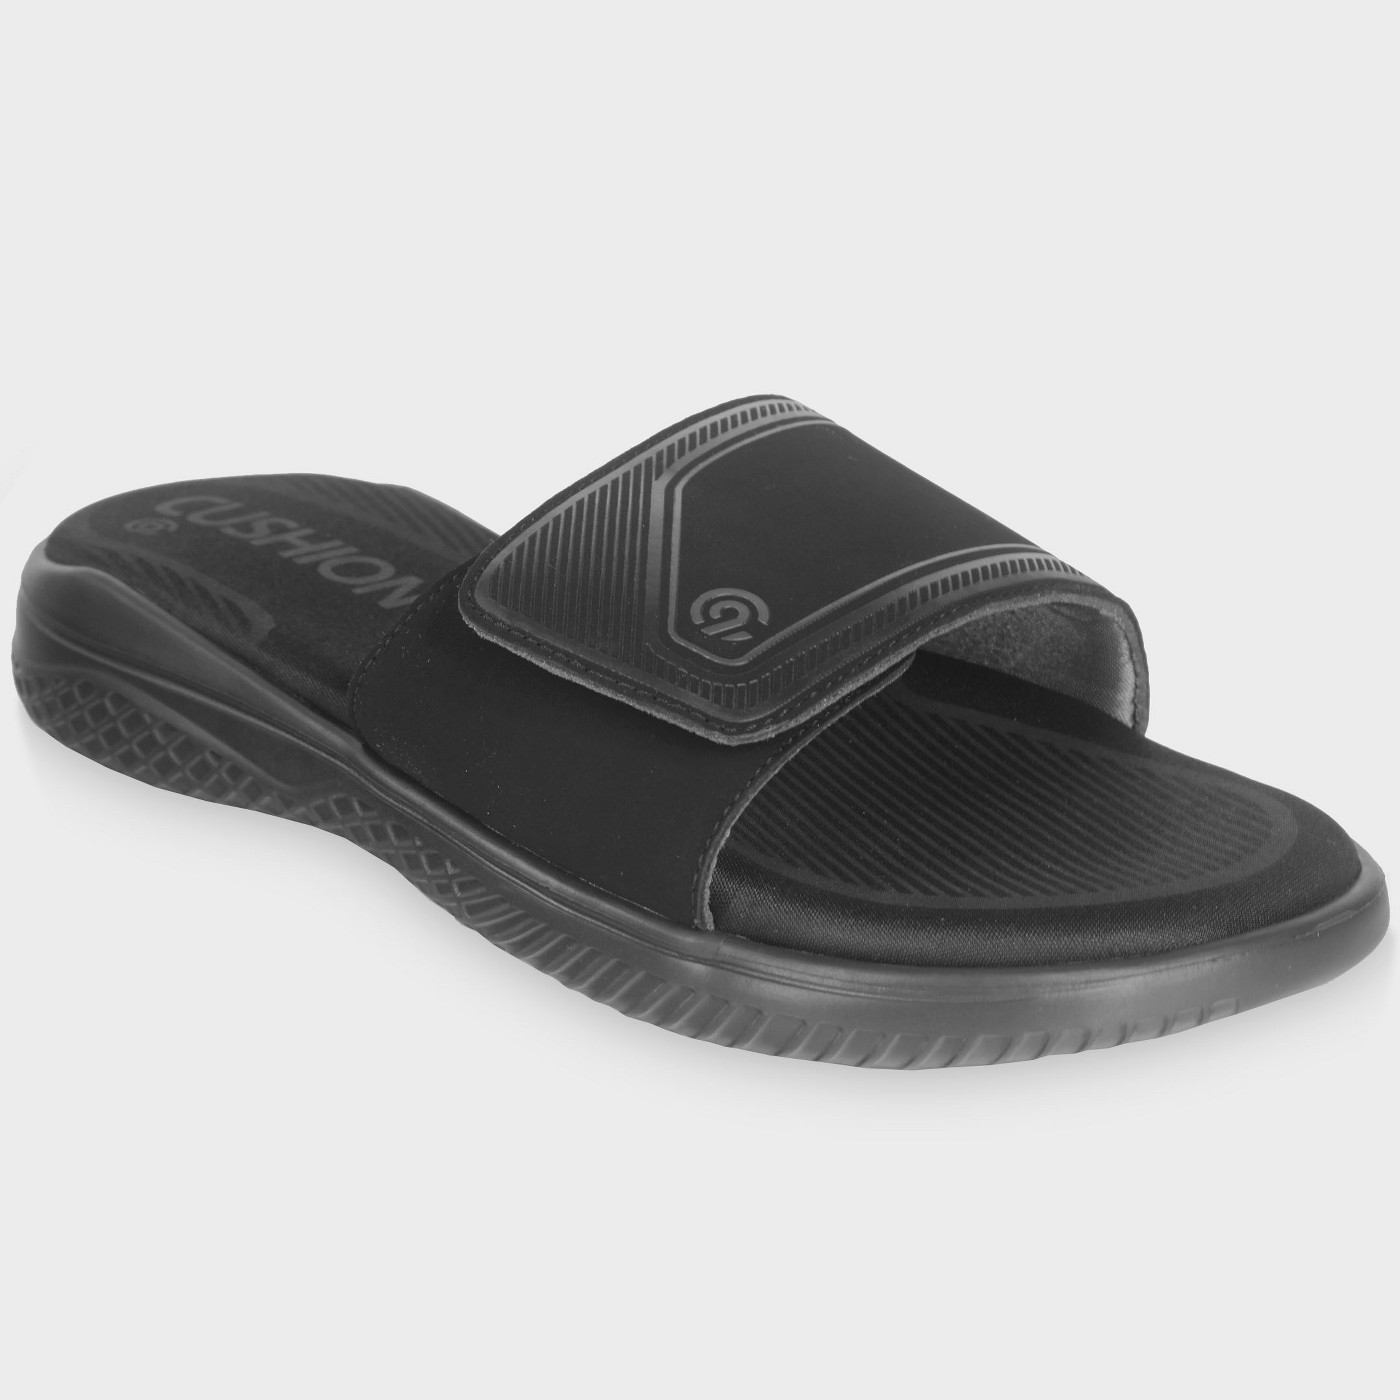 Men's Jack Slide sandals - C9 Champion® Black - image 1 of 3